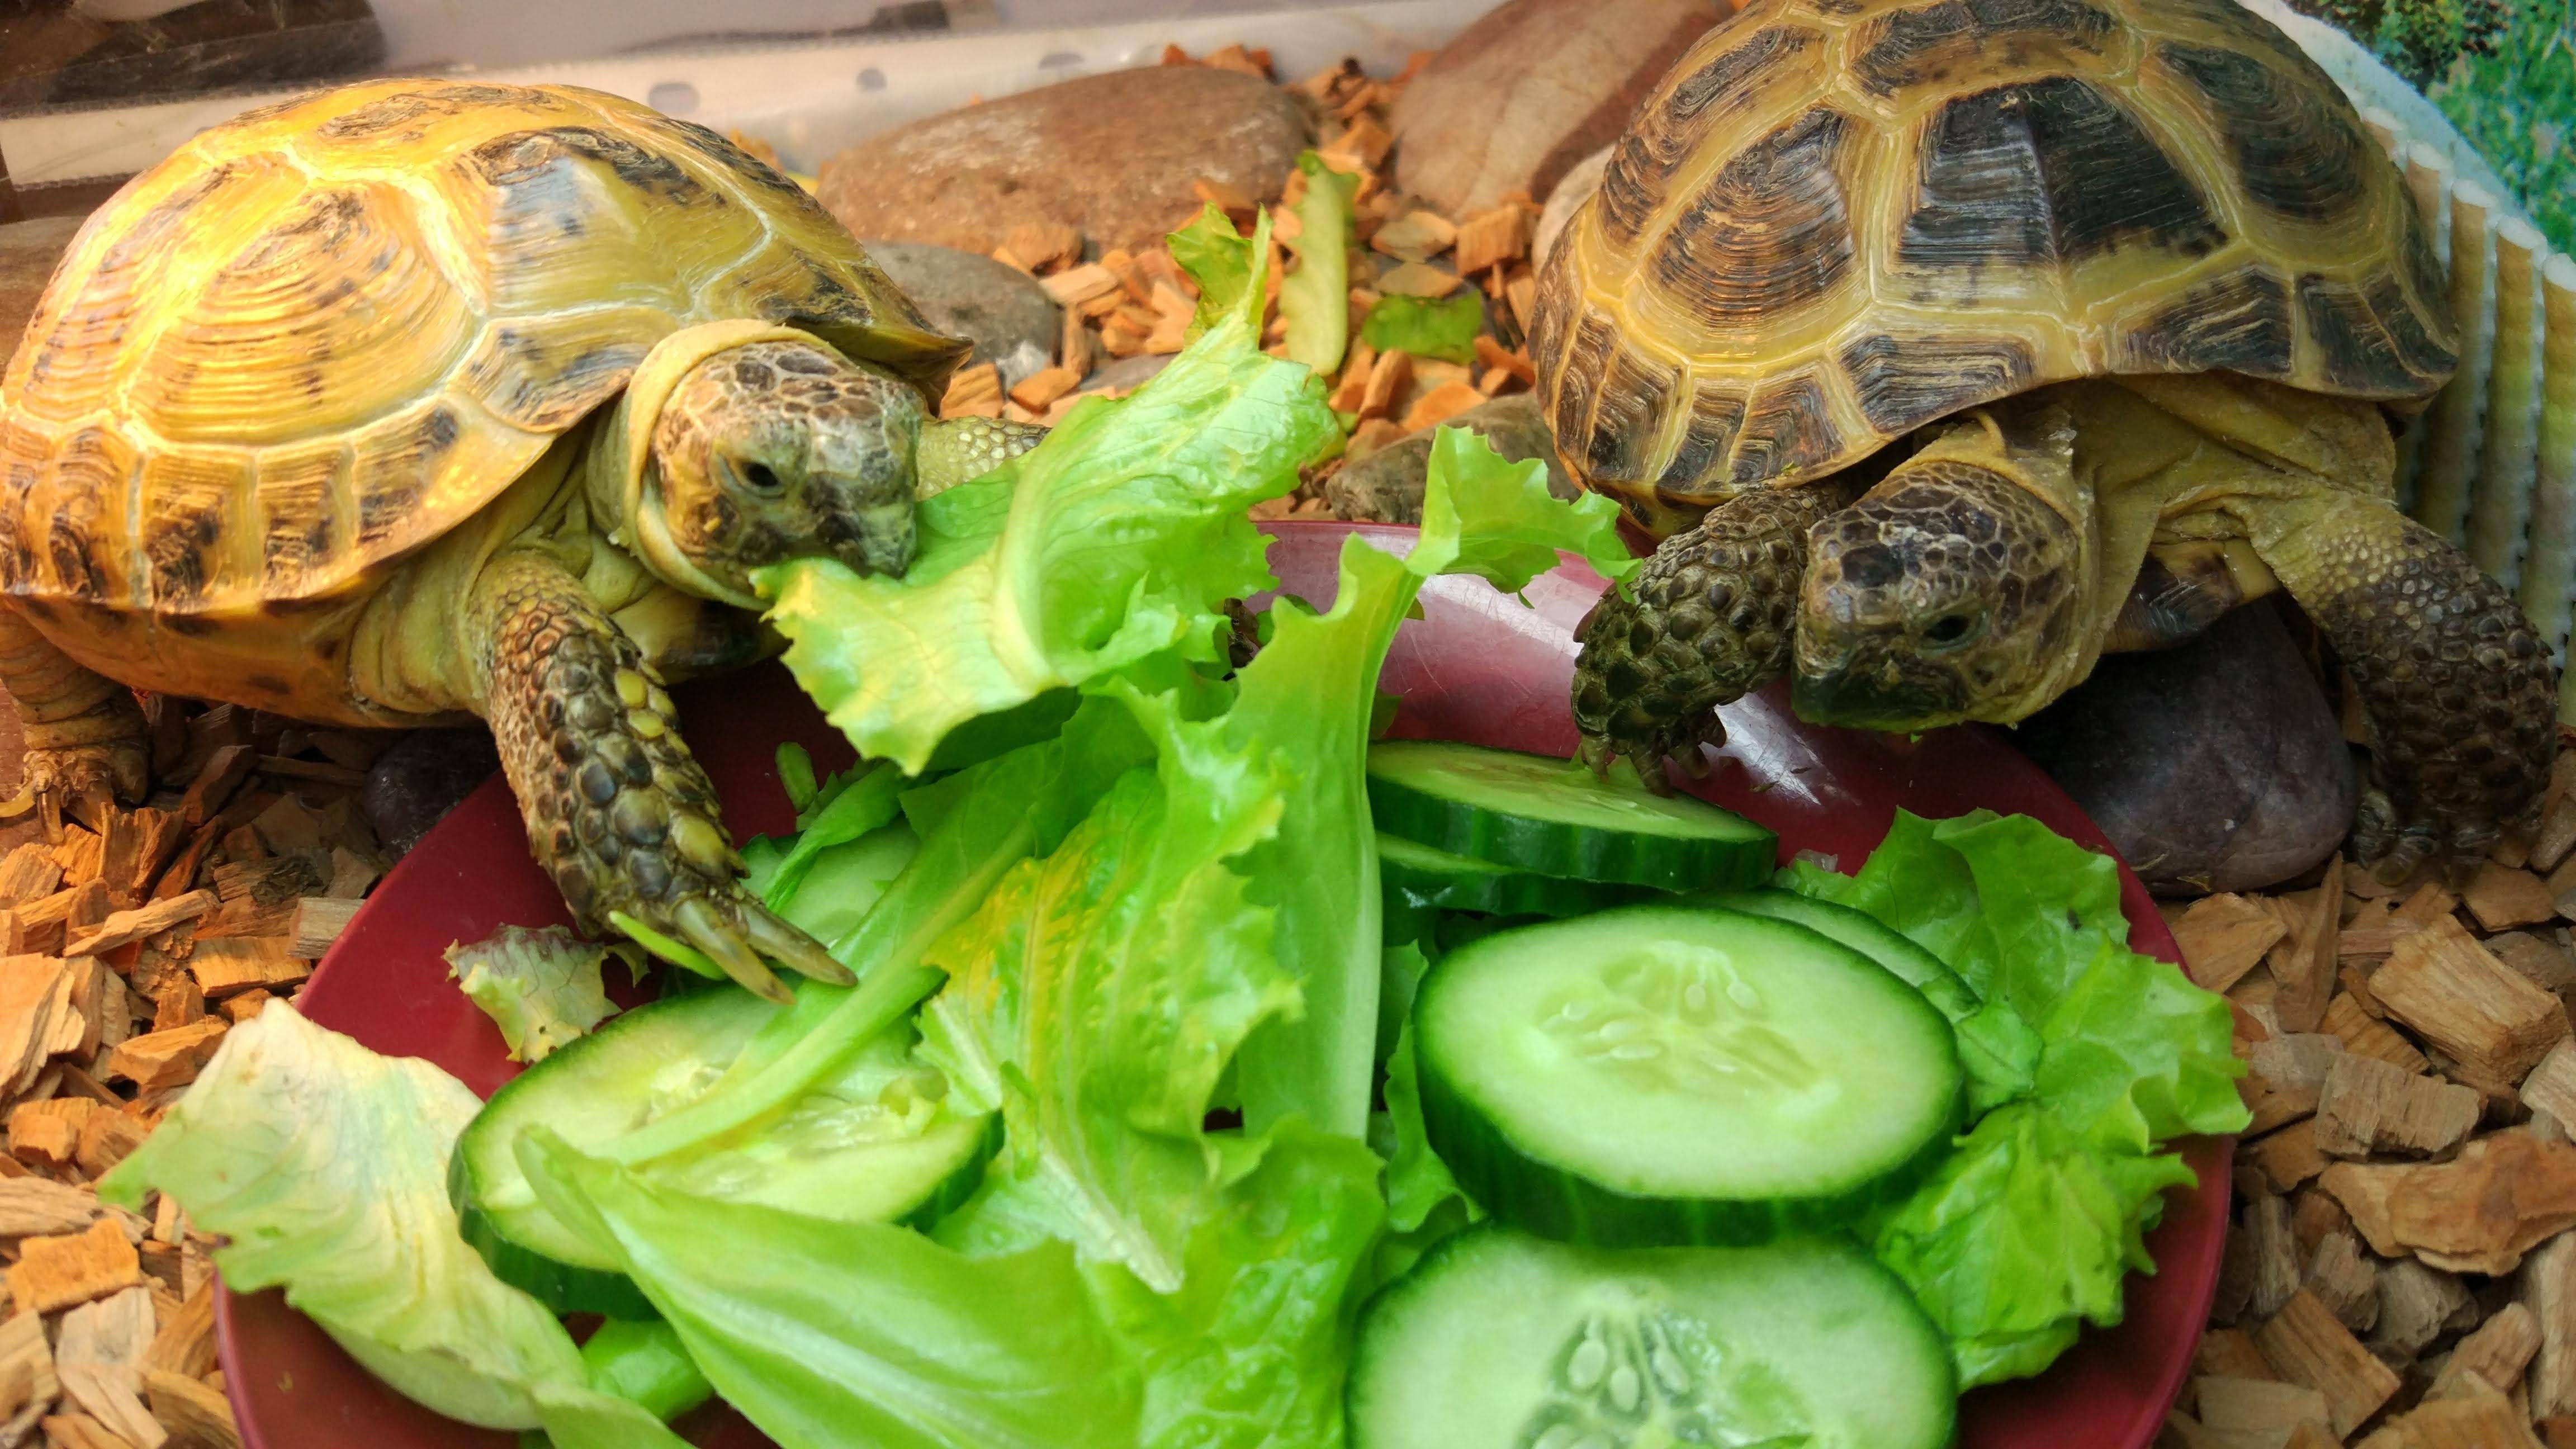 Уход и содержание среднеазиатской черепахи в домашних условиях